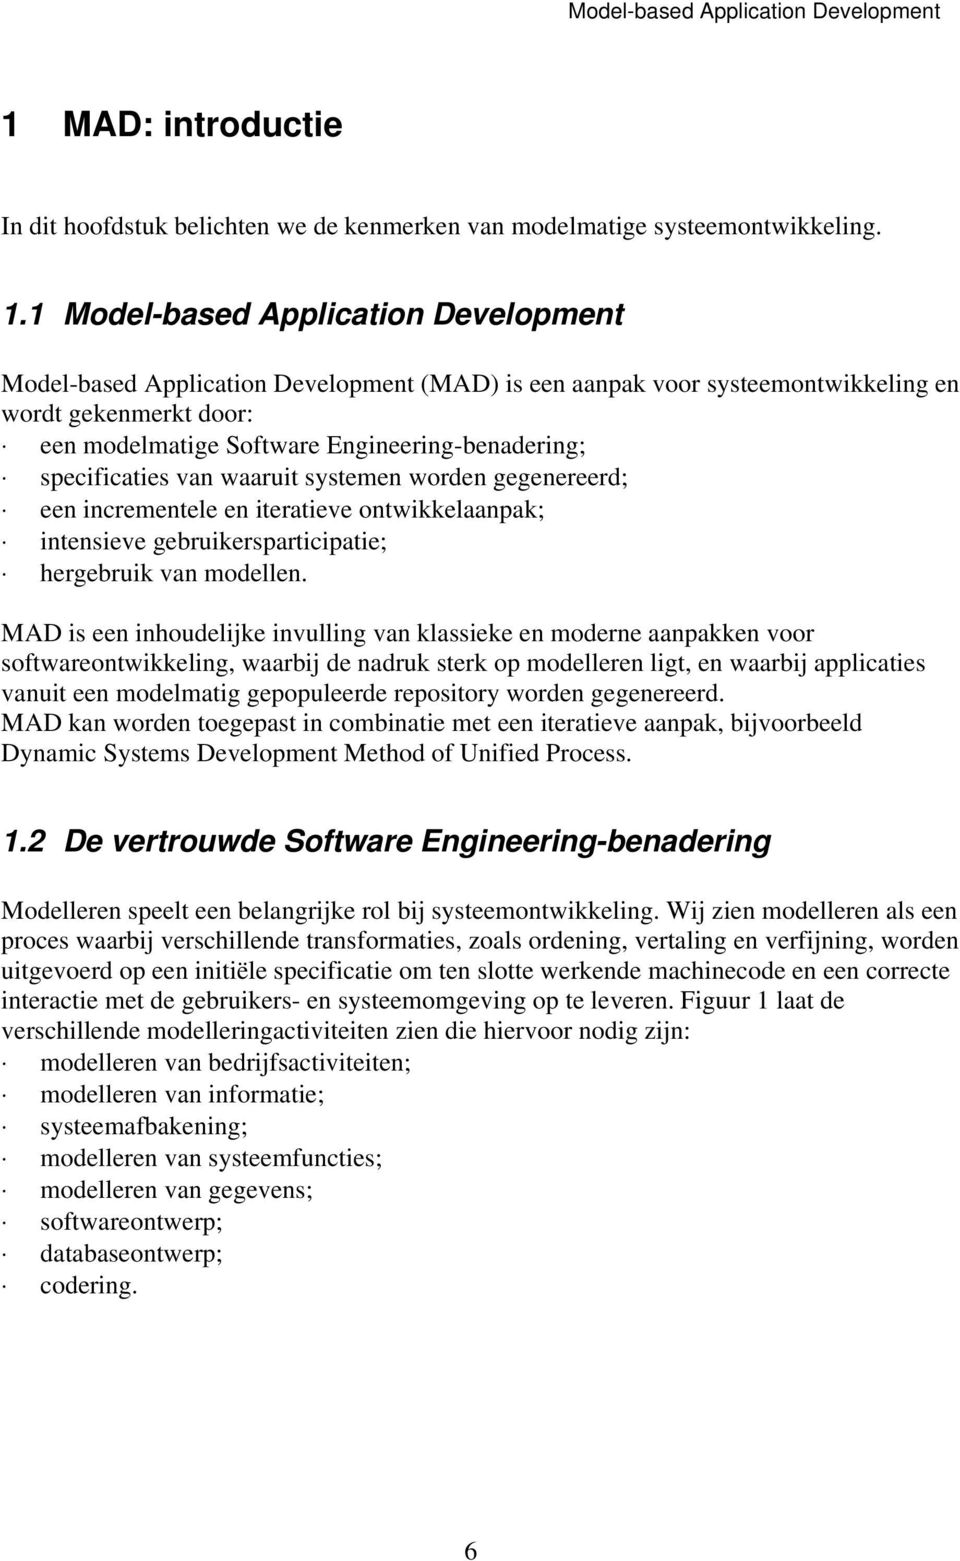 1 Model-based Application Development Model-based Application Development (MAD) is een aanpak voor systeemontwikkeling en wordt gekenmerkt door: een modelmatige Software Engineering-benadering;